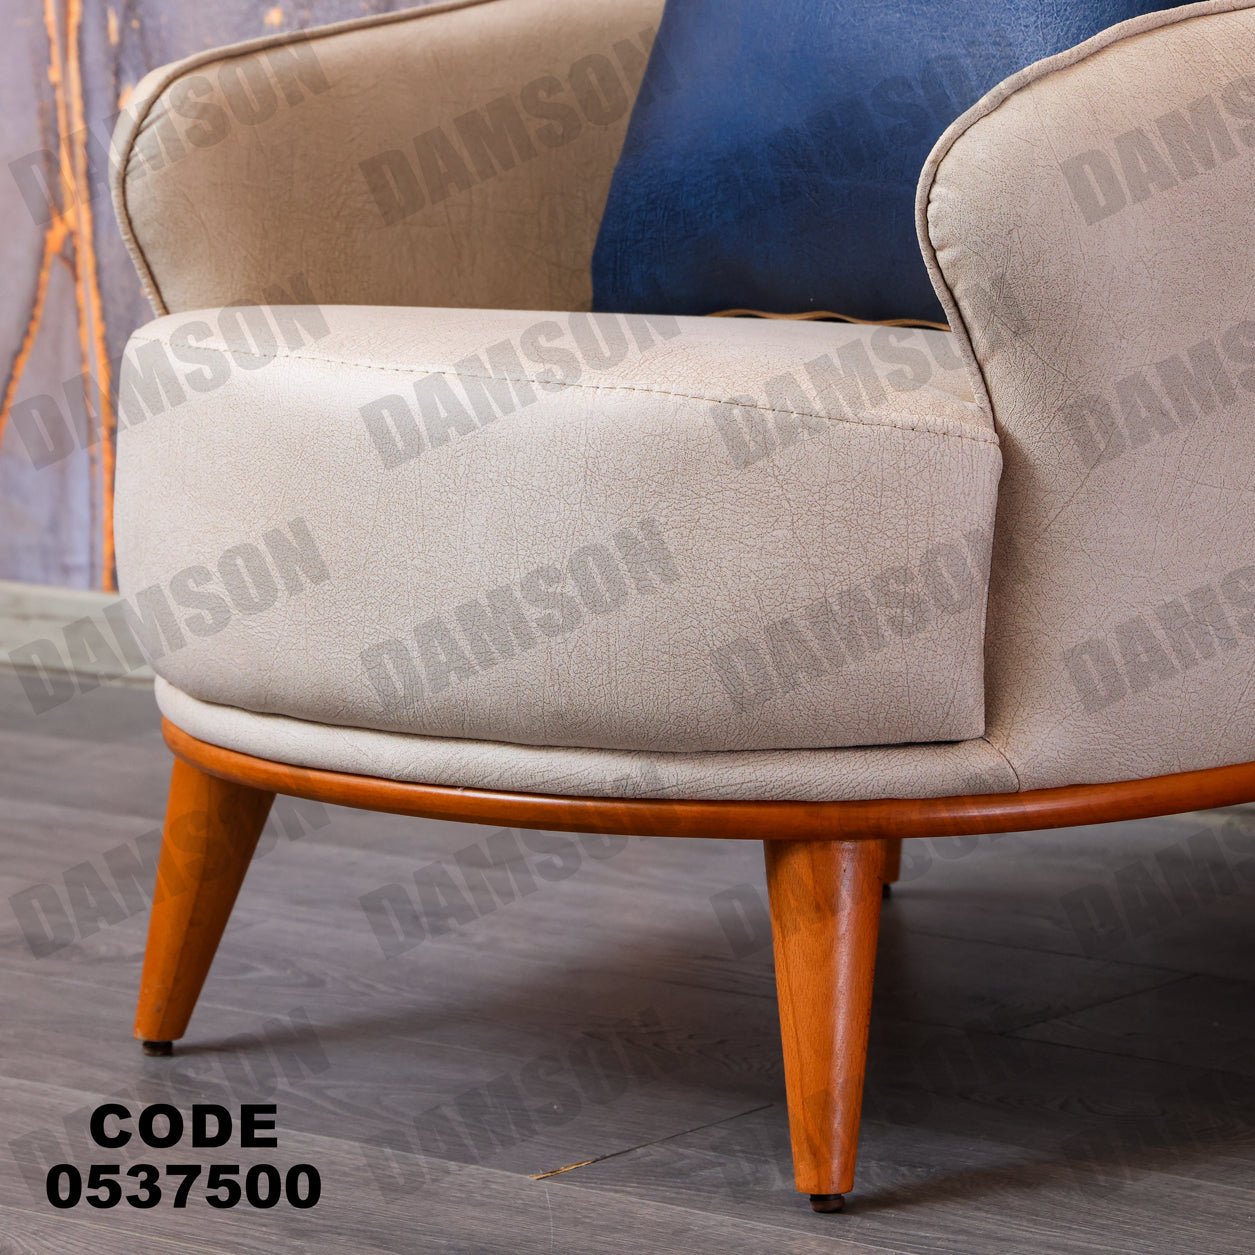 فوتية 1-375 - Damson Furnitureفوتية 1-375